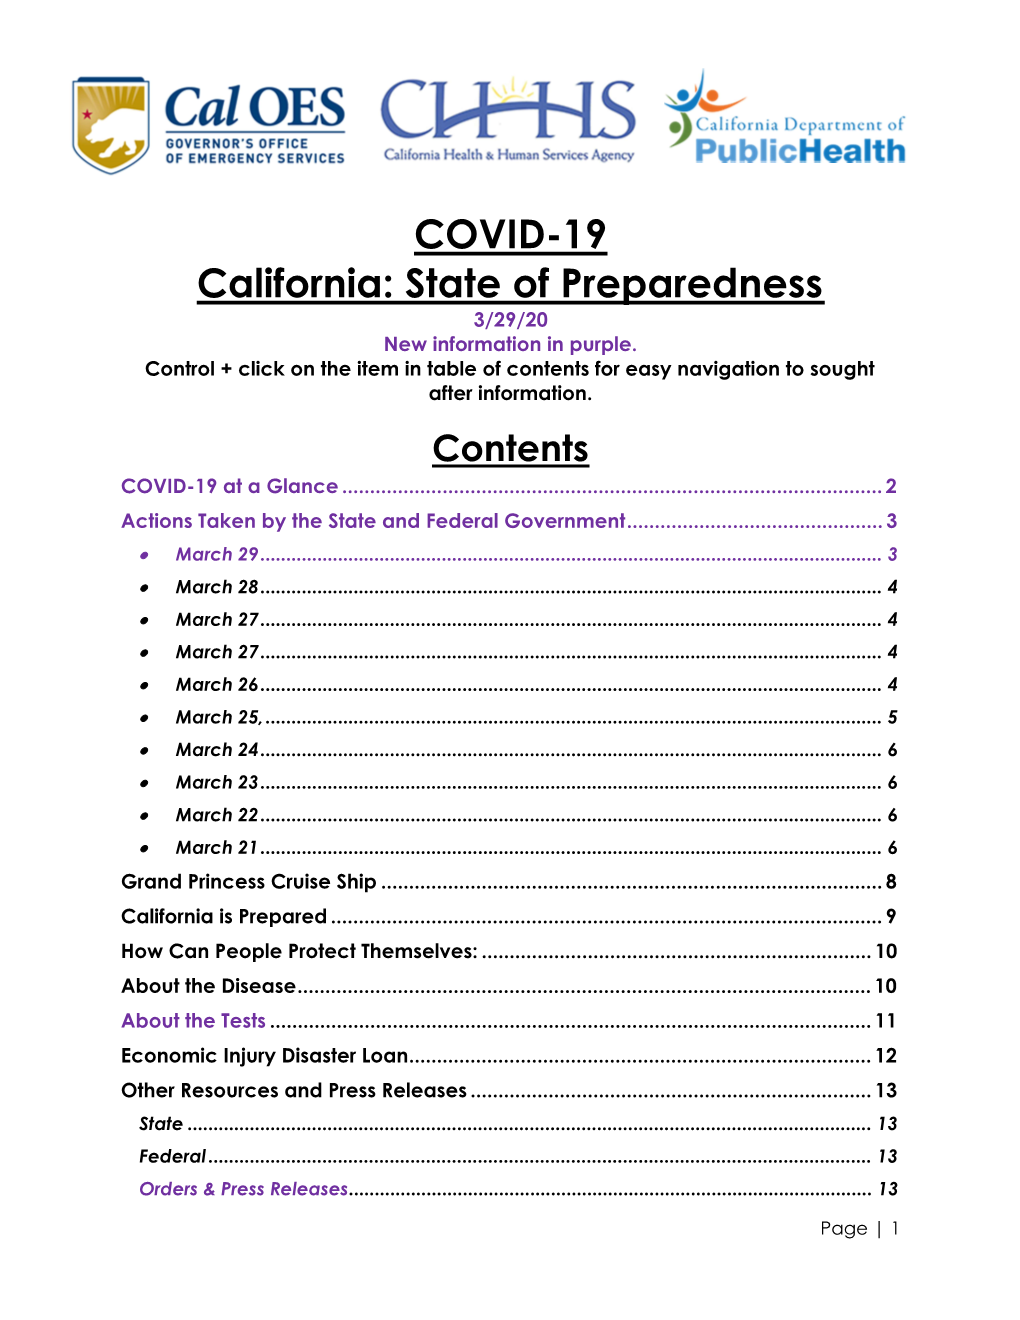 COVID-19 California: State of Preparedness 3/29/20 New Information in Purple